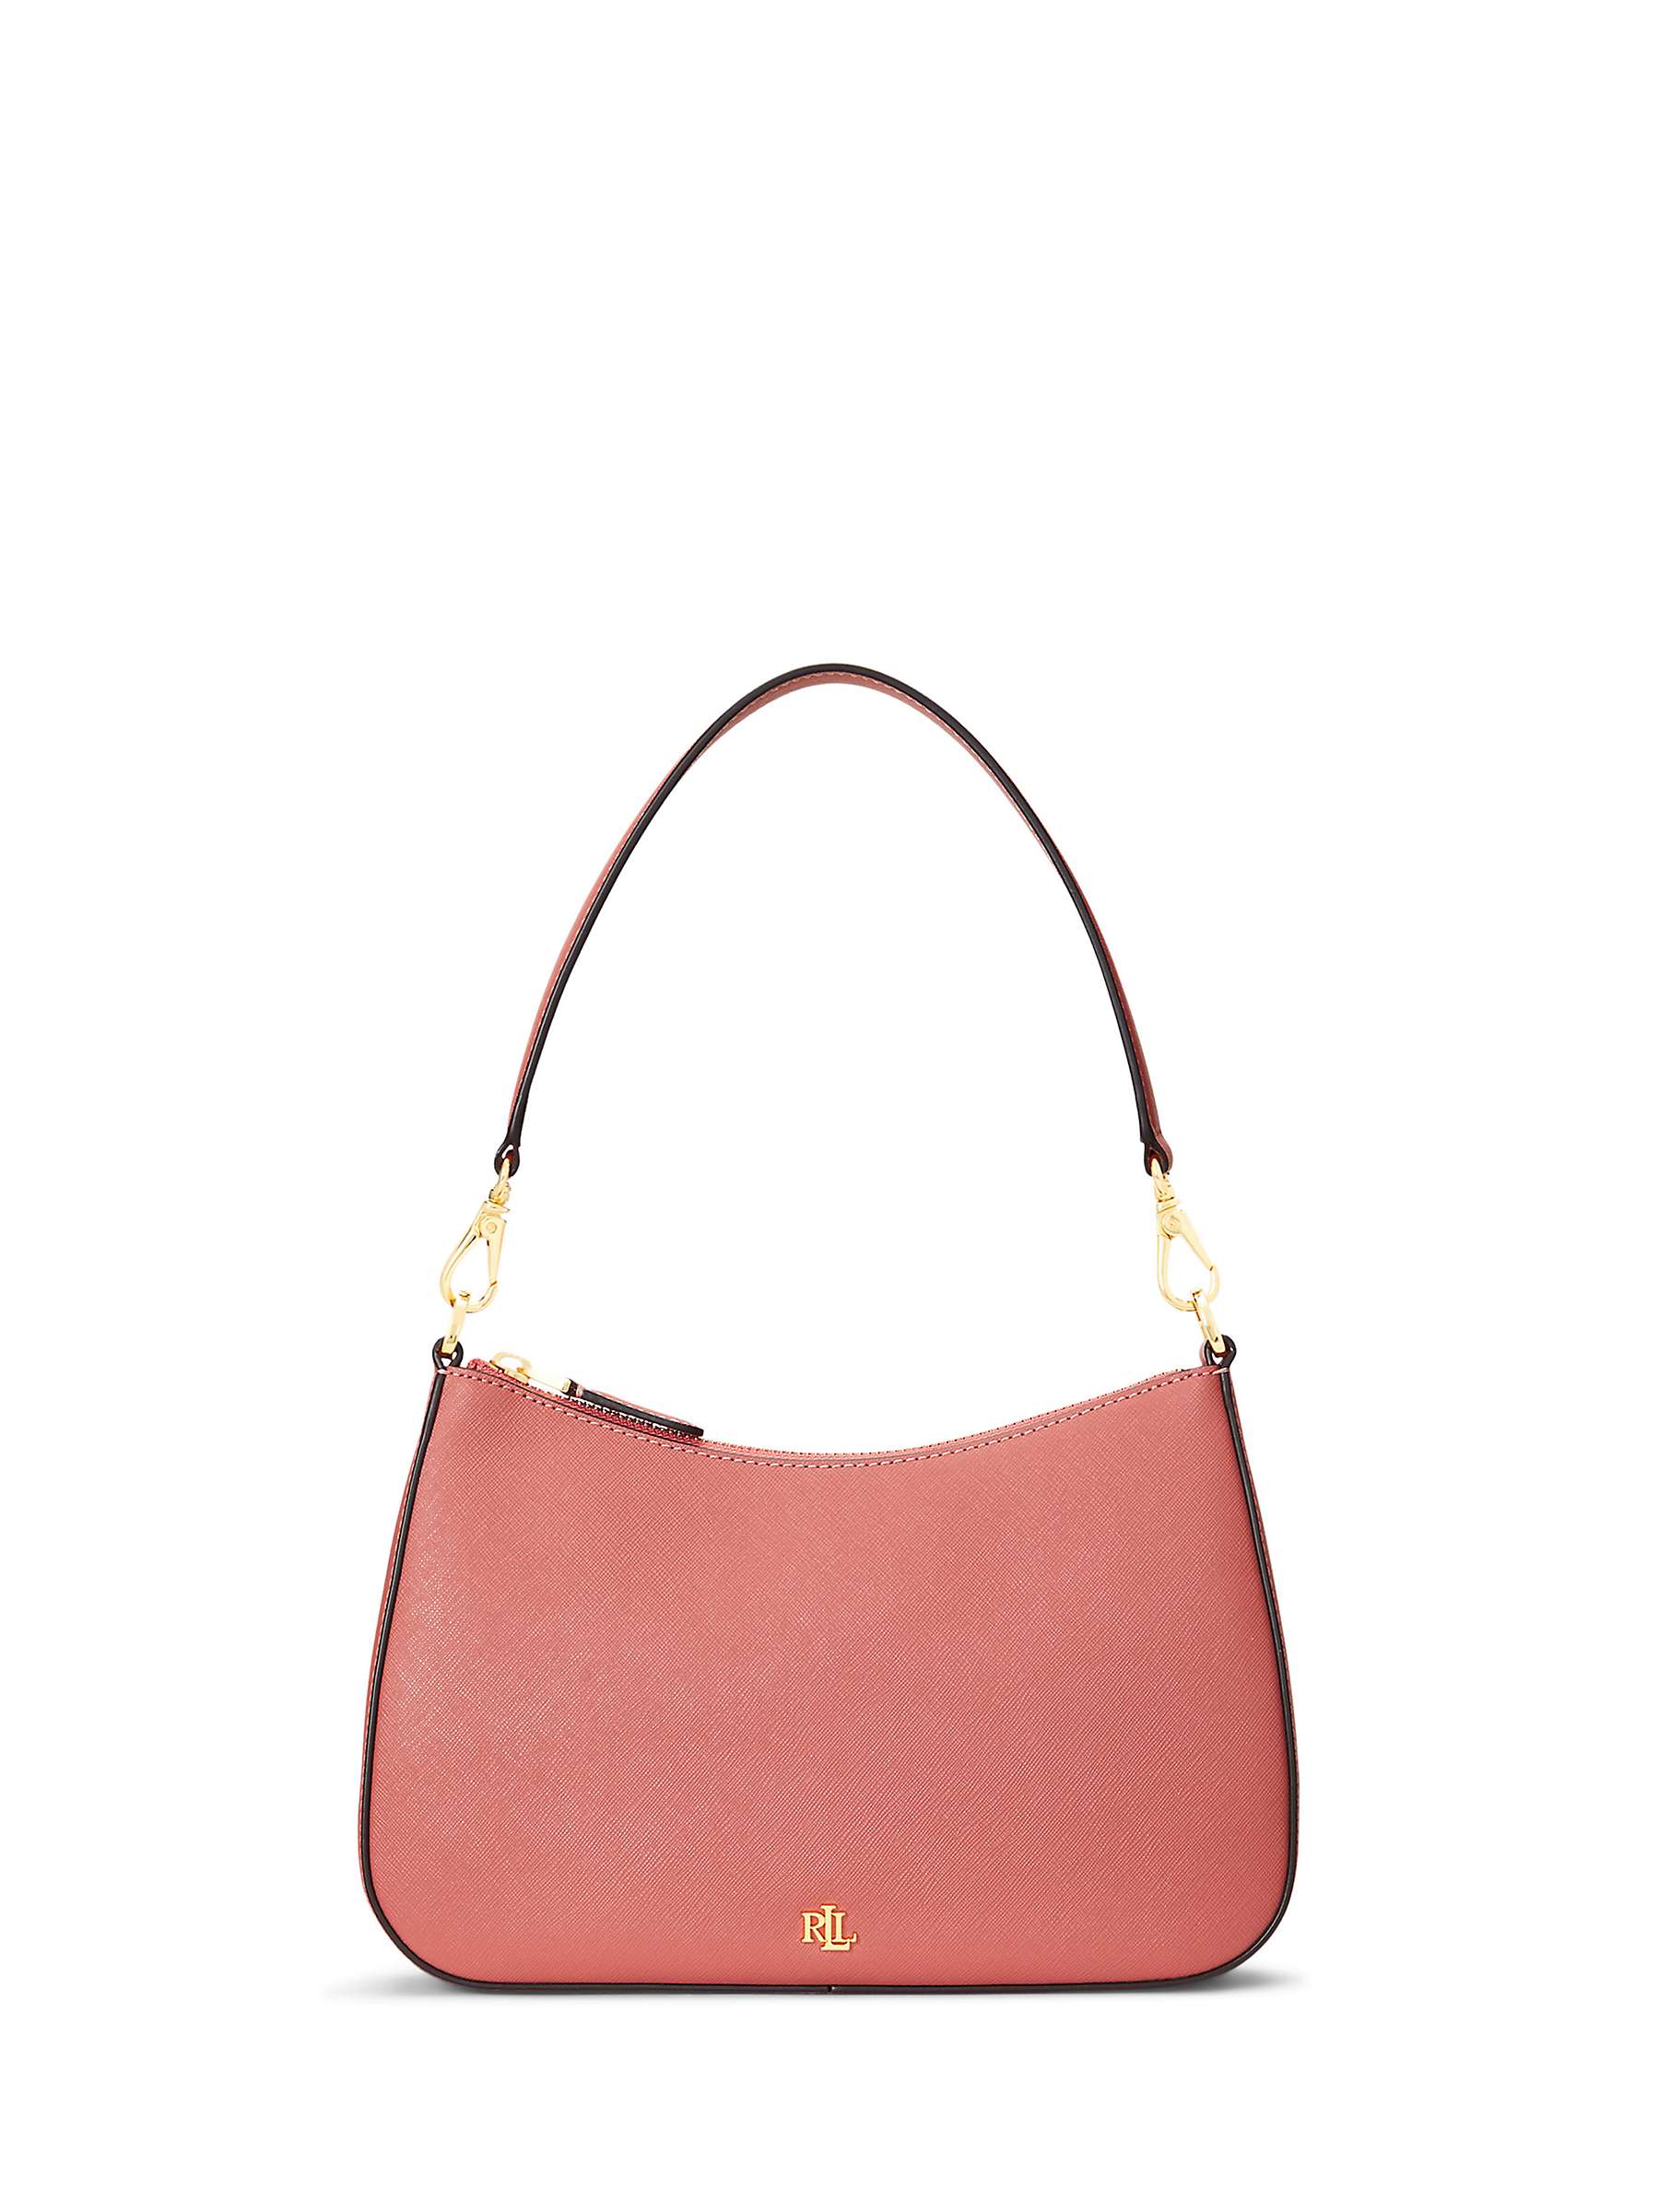 Buy Lauren Ralph Lauren Danni 26 Leather Shoulder Bag Online at johnlewis.com